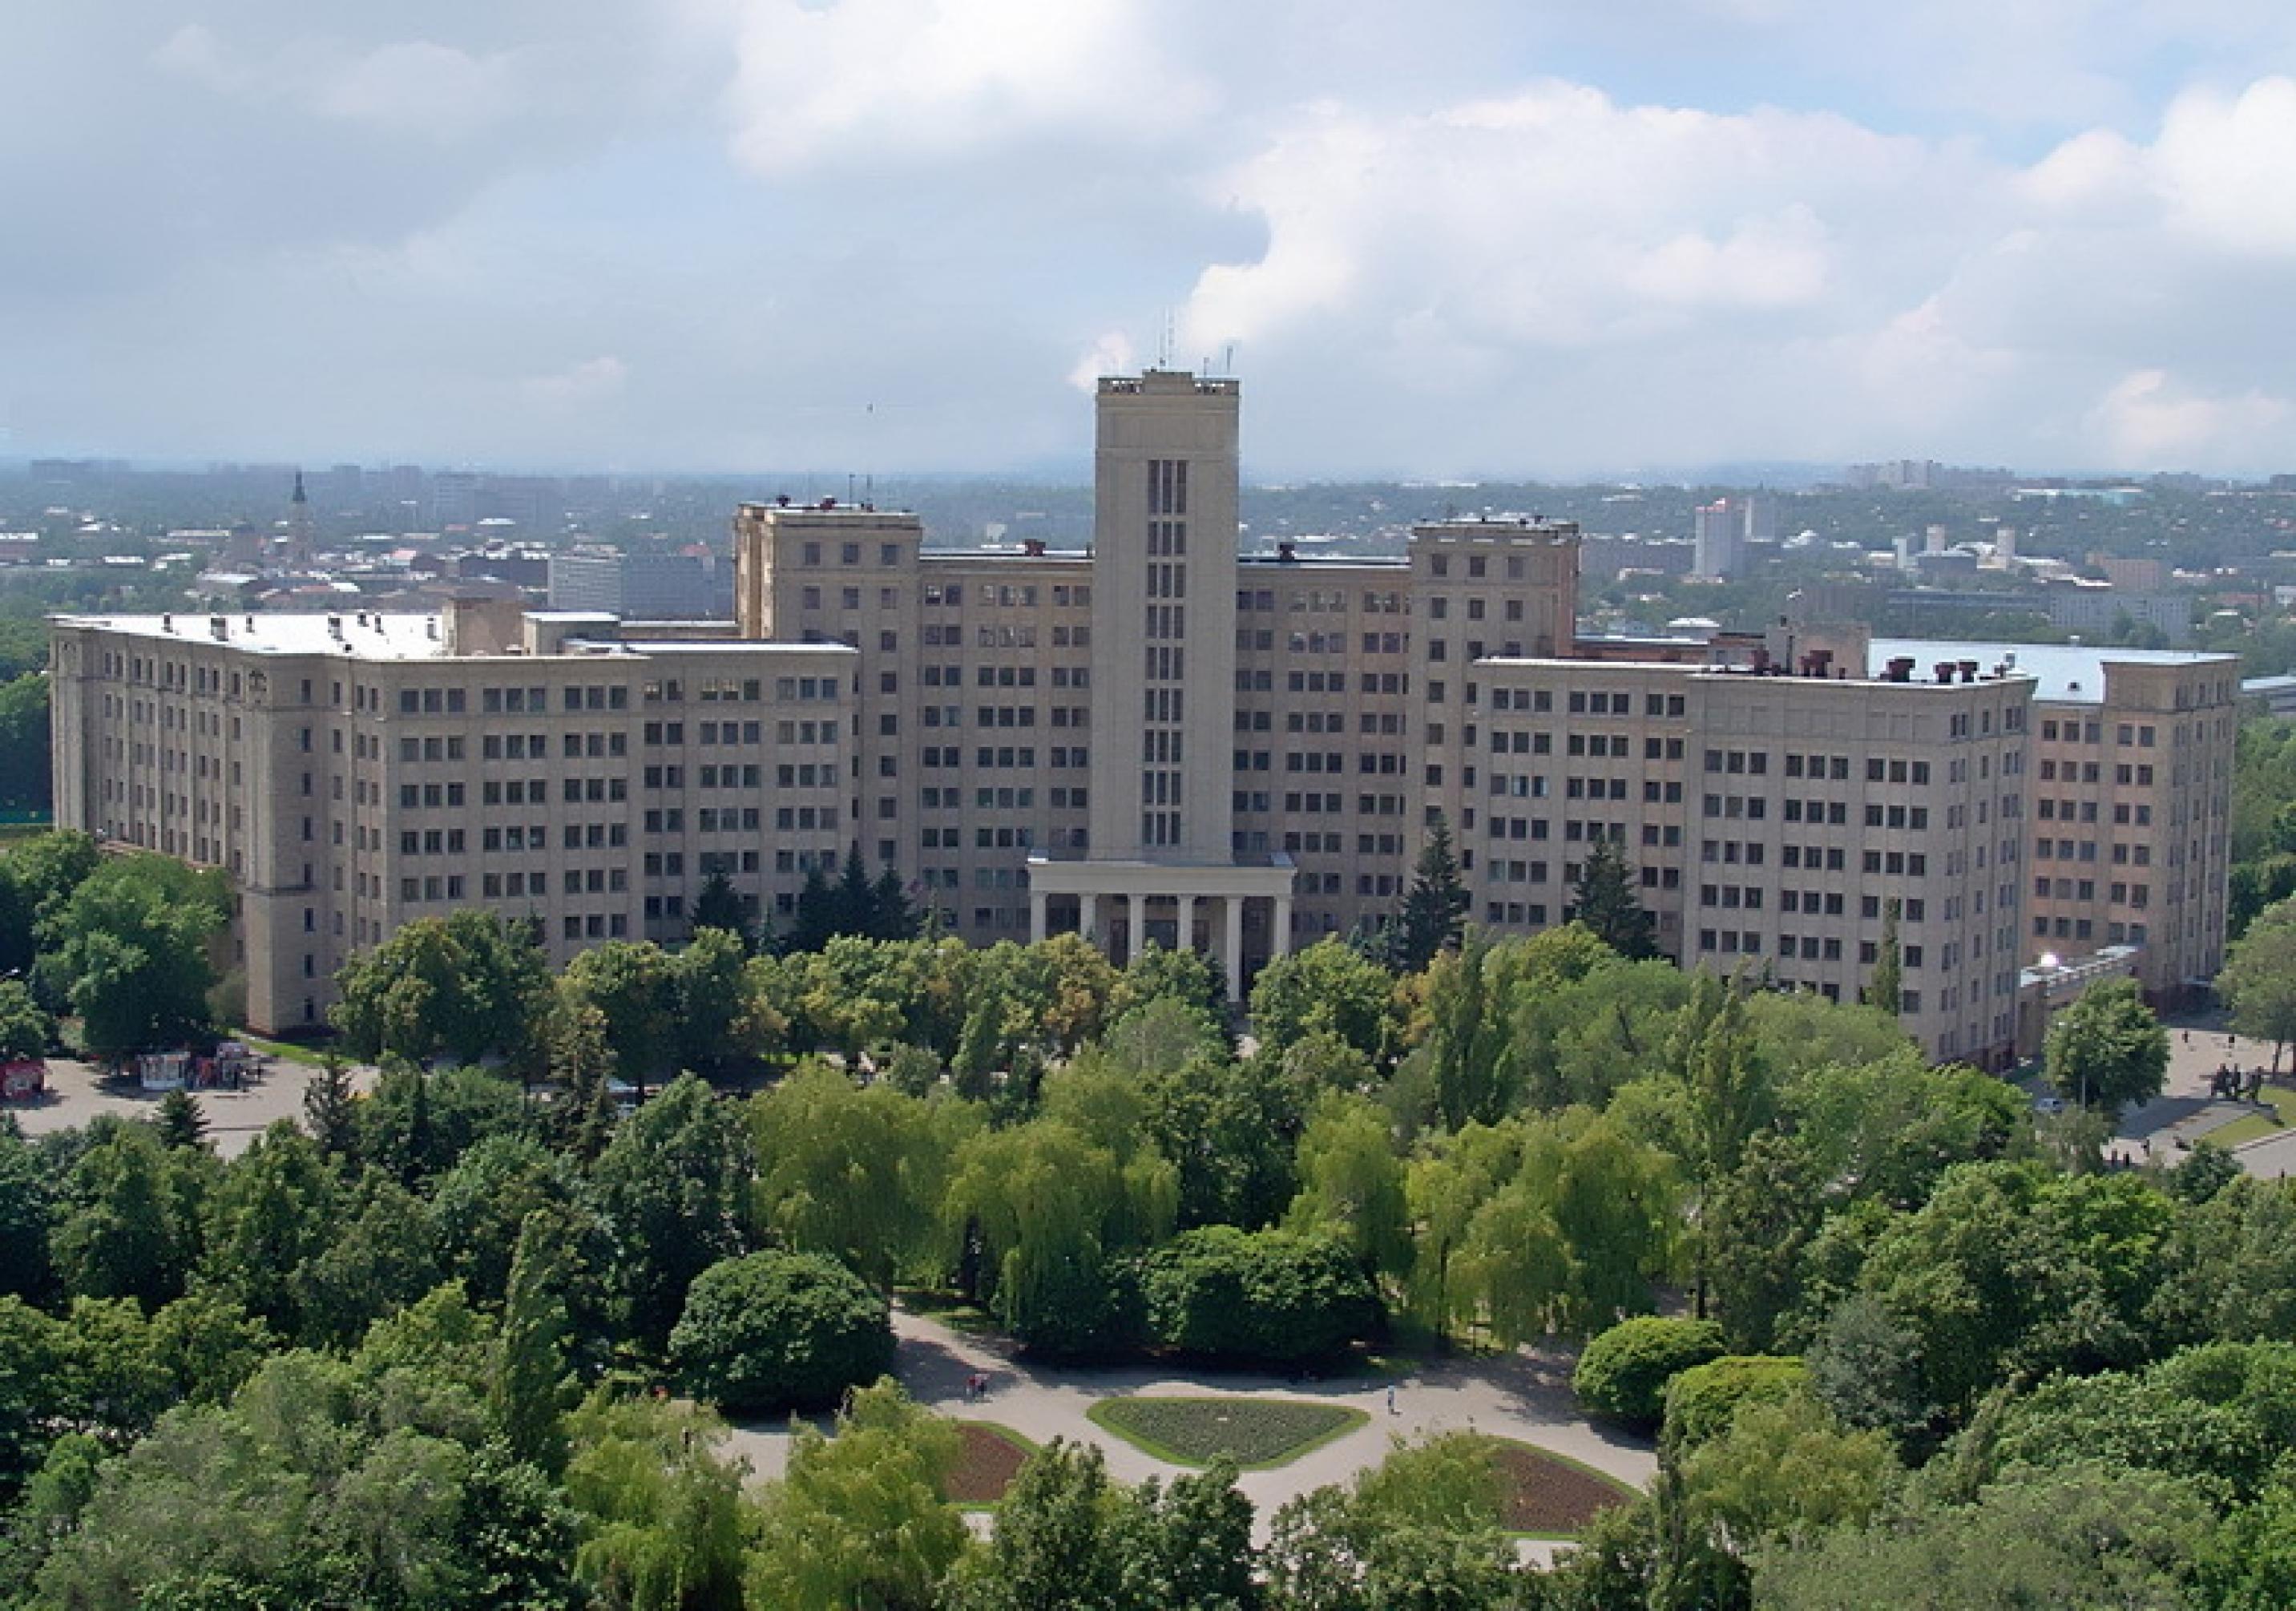 Ein großes, mehrstöckiges, grauen Universitätsgebäude umgeben von grünen Bäumen.